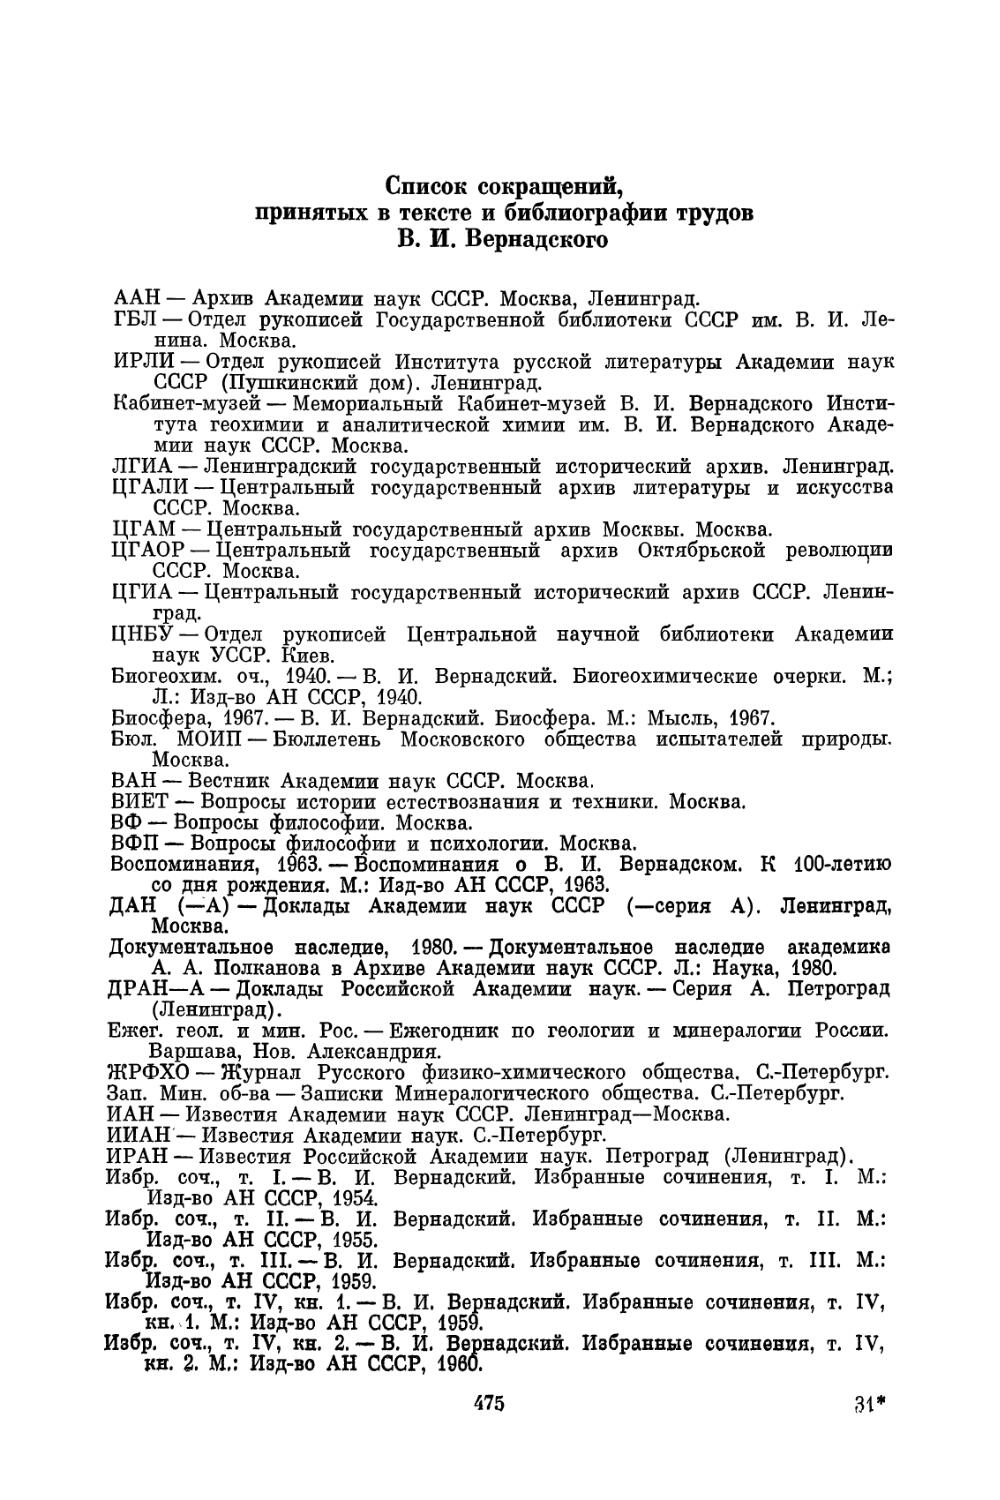 Список сокращений, принятых в тексте и библиографии трудов В. И. Вернадского